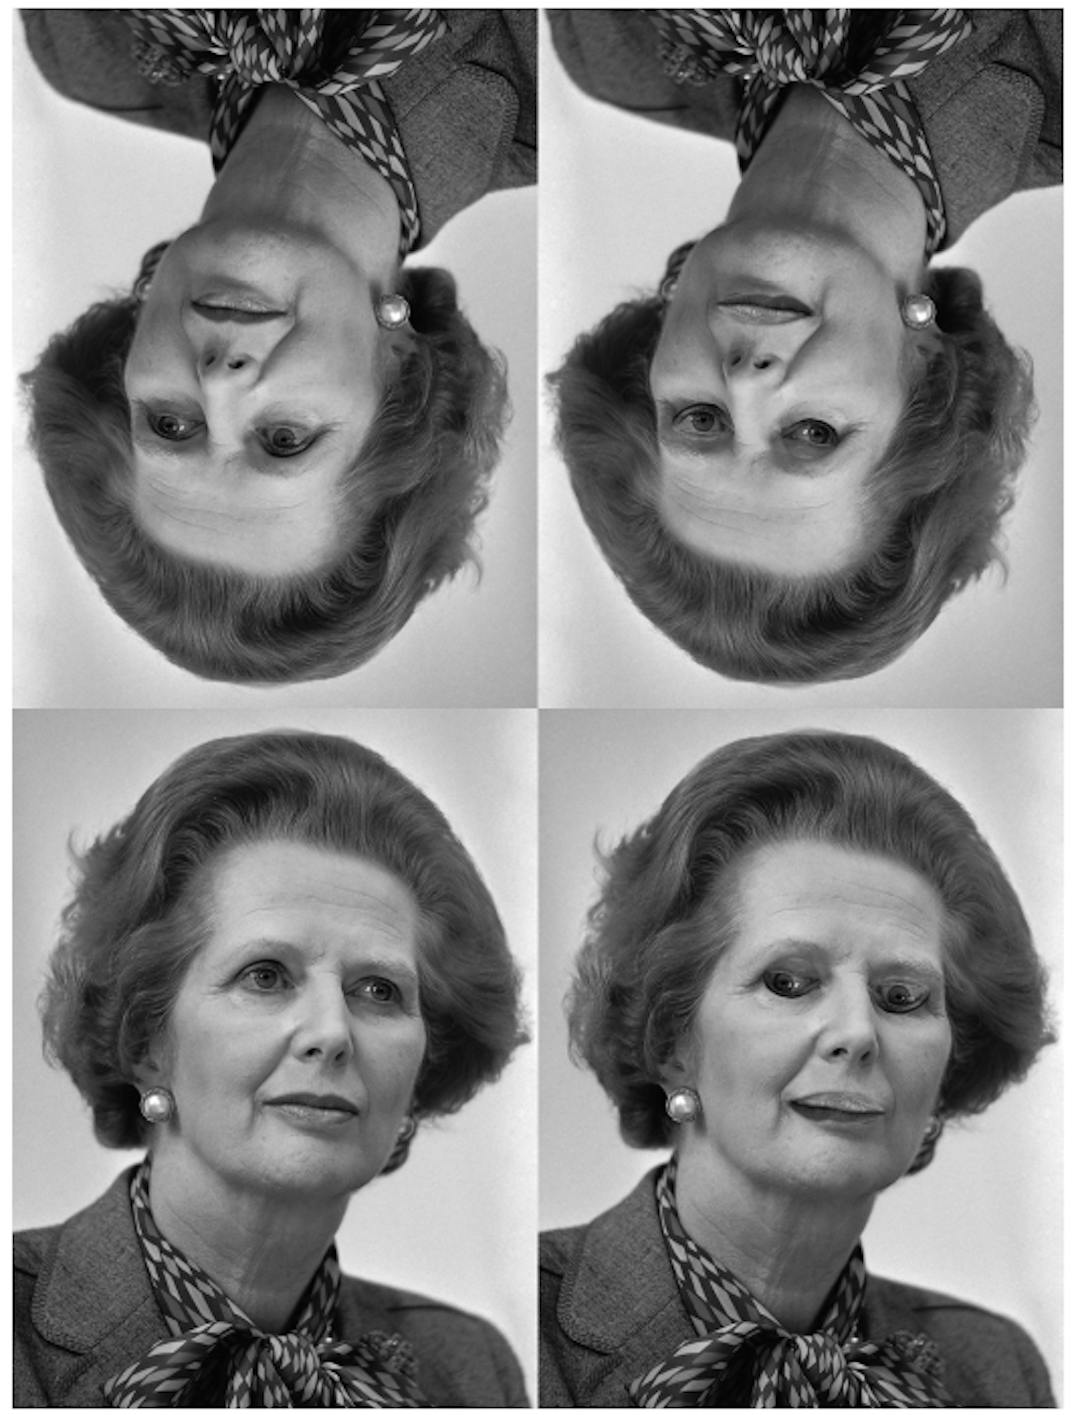 Figure 4. L'illusion de Margaret Thatcher [31] : les visages de la rangée du haut sont des versions inversées de ceux de la rangée du bas. L’inversion des yeux et de la bouche en bas à droite est évidente lorsque le visage est droit, mais pas lorsqu’il est inversé. (Crédit : Rob Bogaerts/Anefo https://commons.wikimedia.org/w/index.php? curid=79649613))